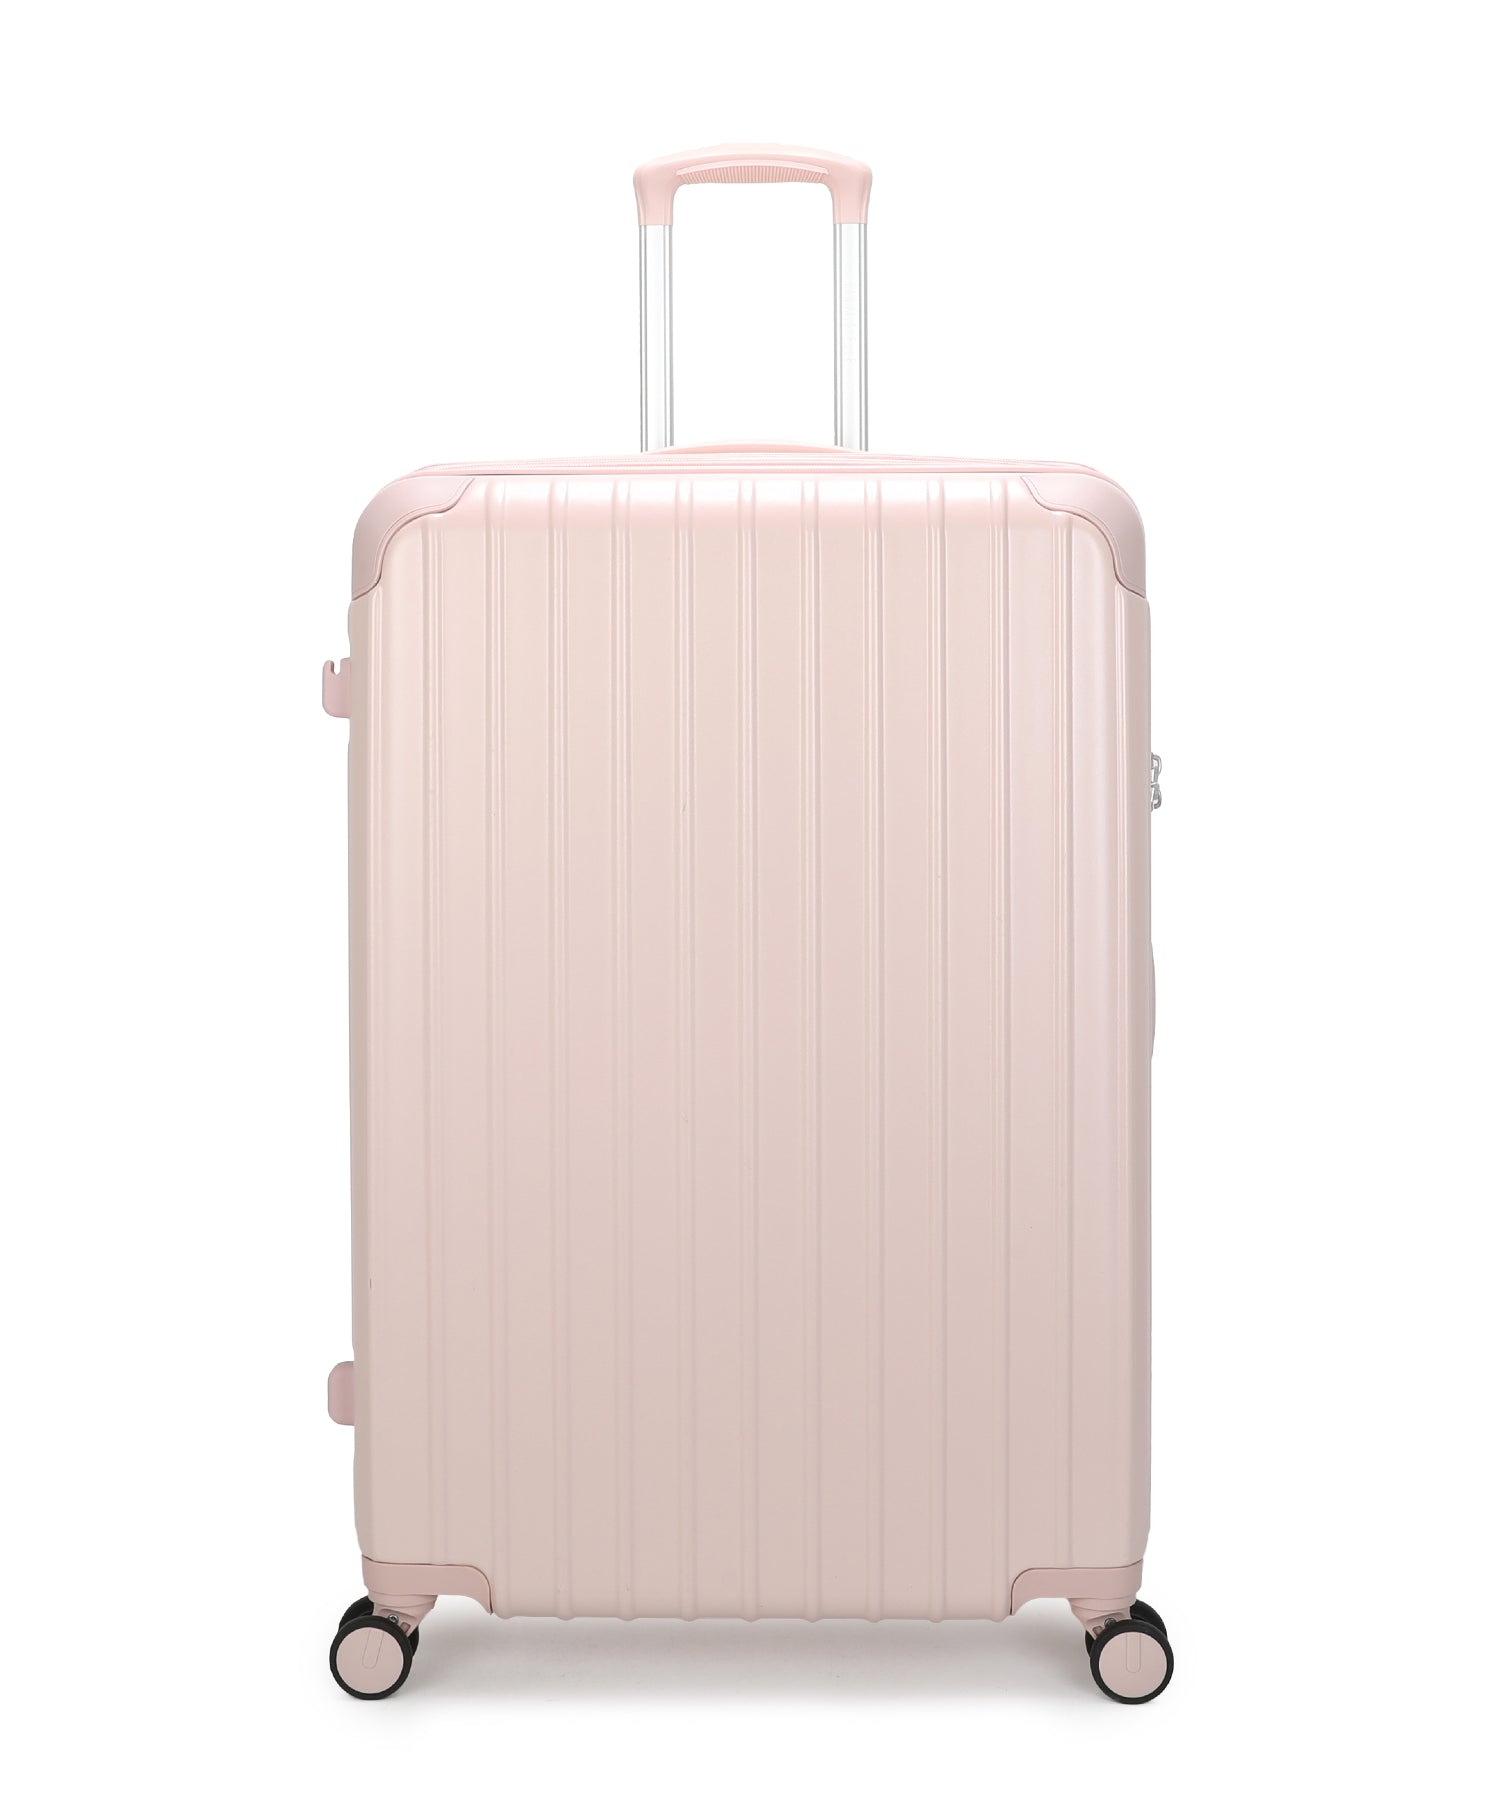 San Michelle Metro Traveller 74cm Suitcase